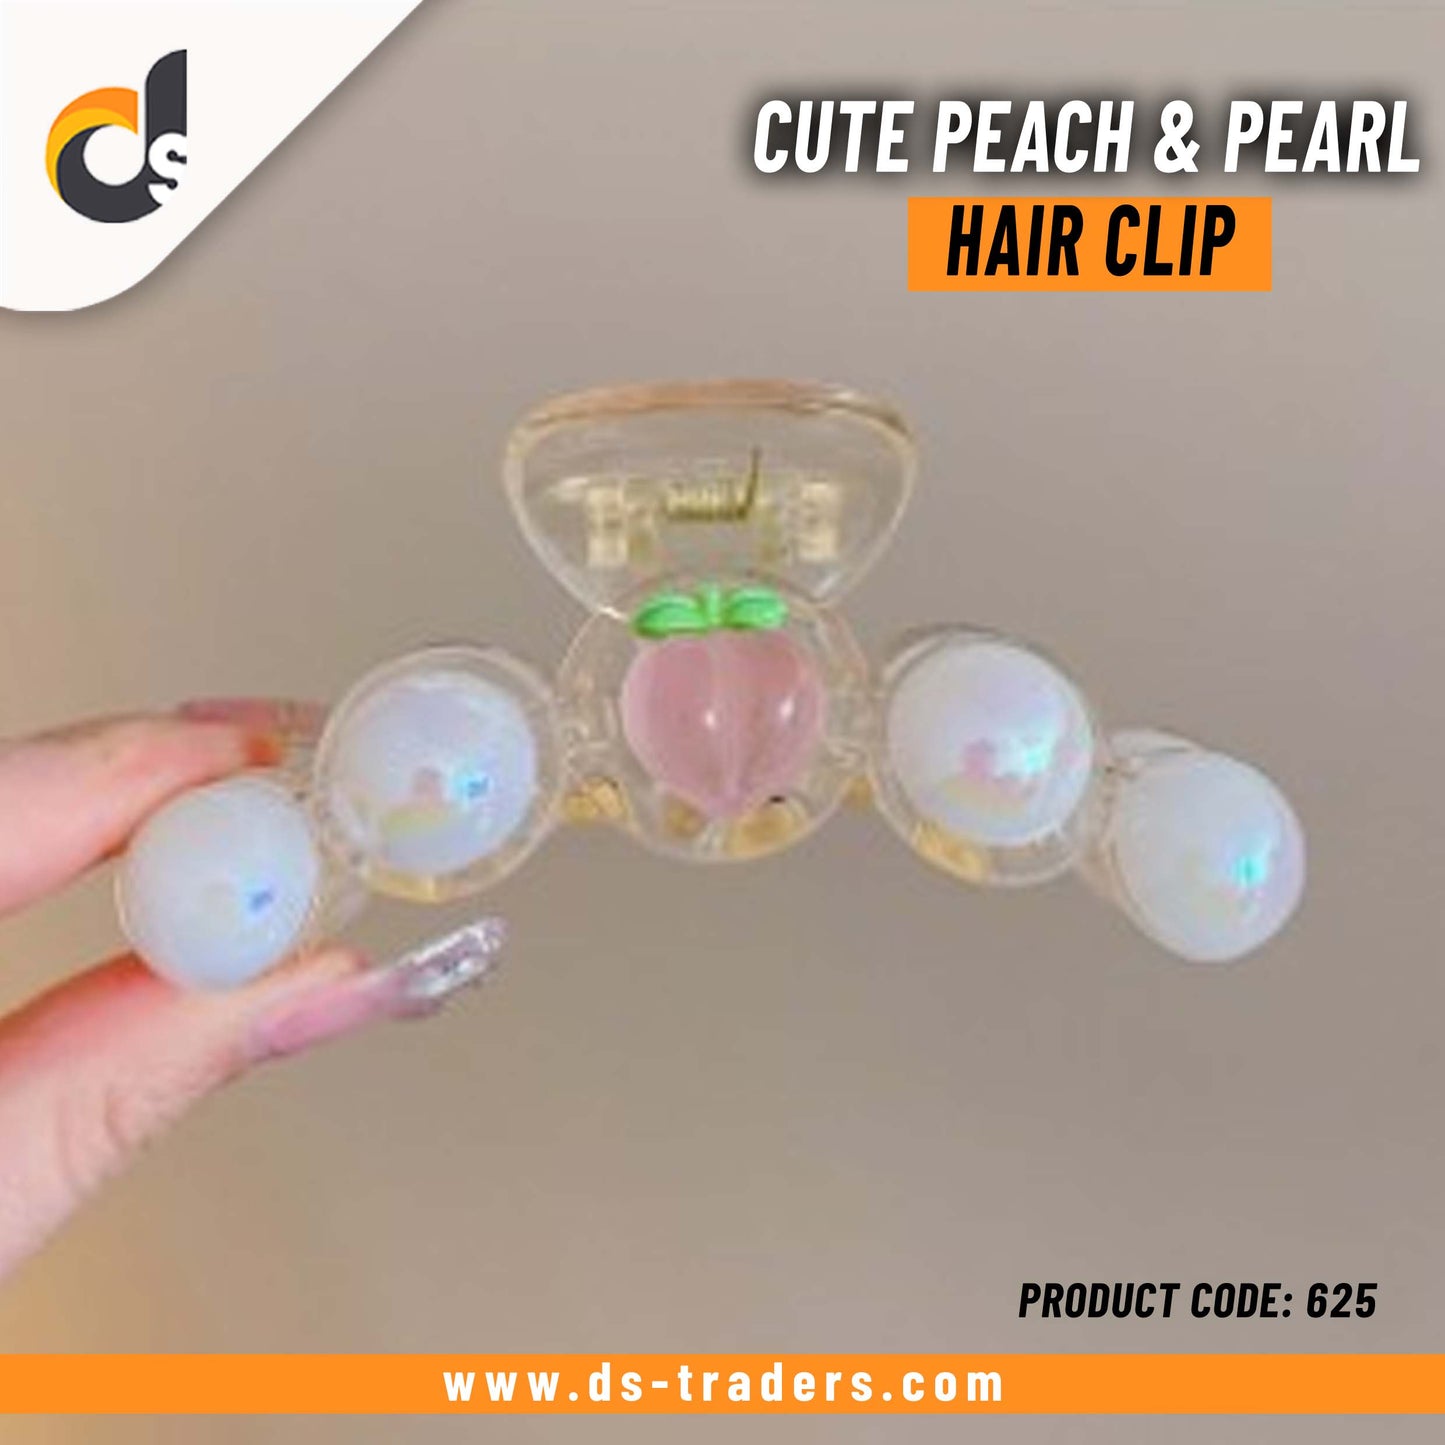 Cute Peach & Pearl Hair Clip